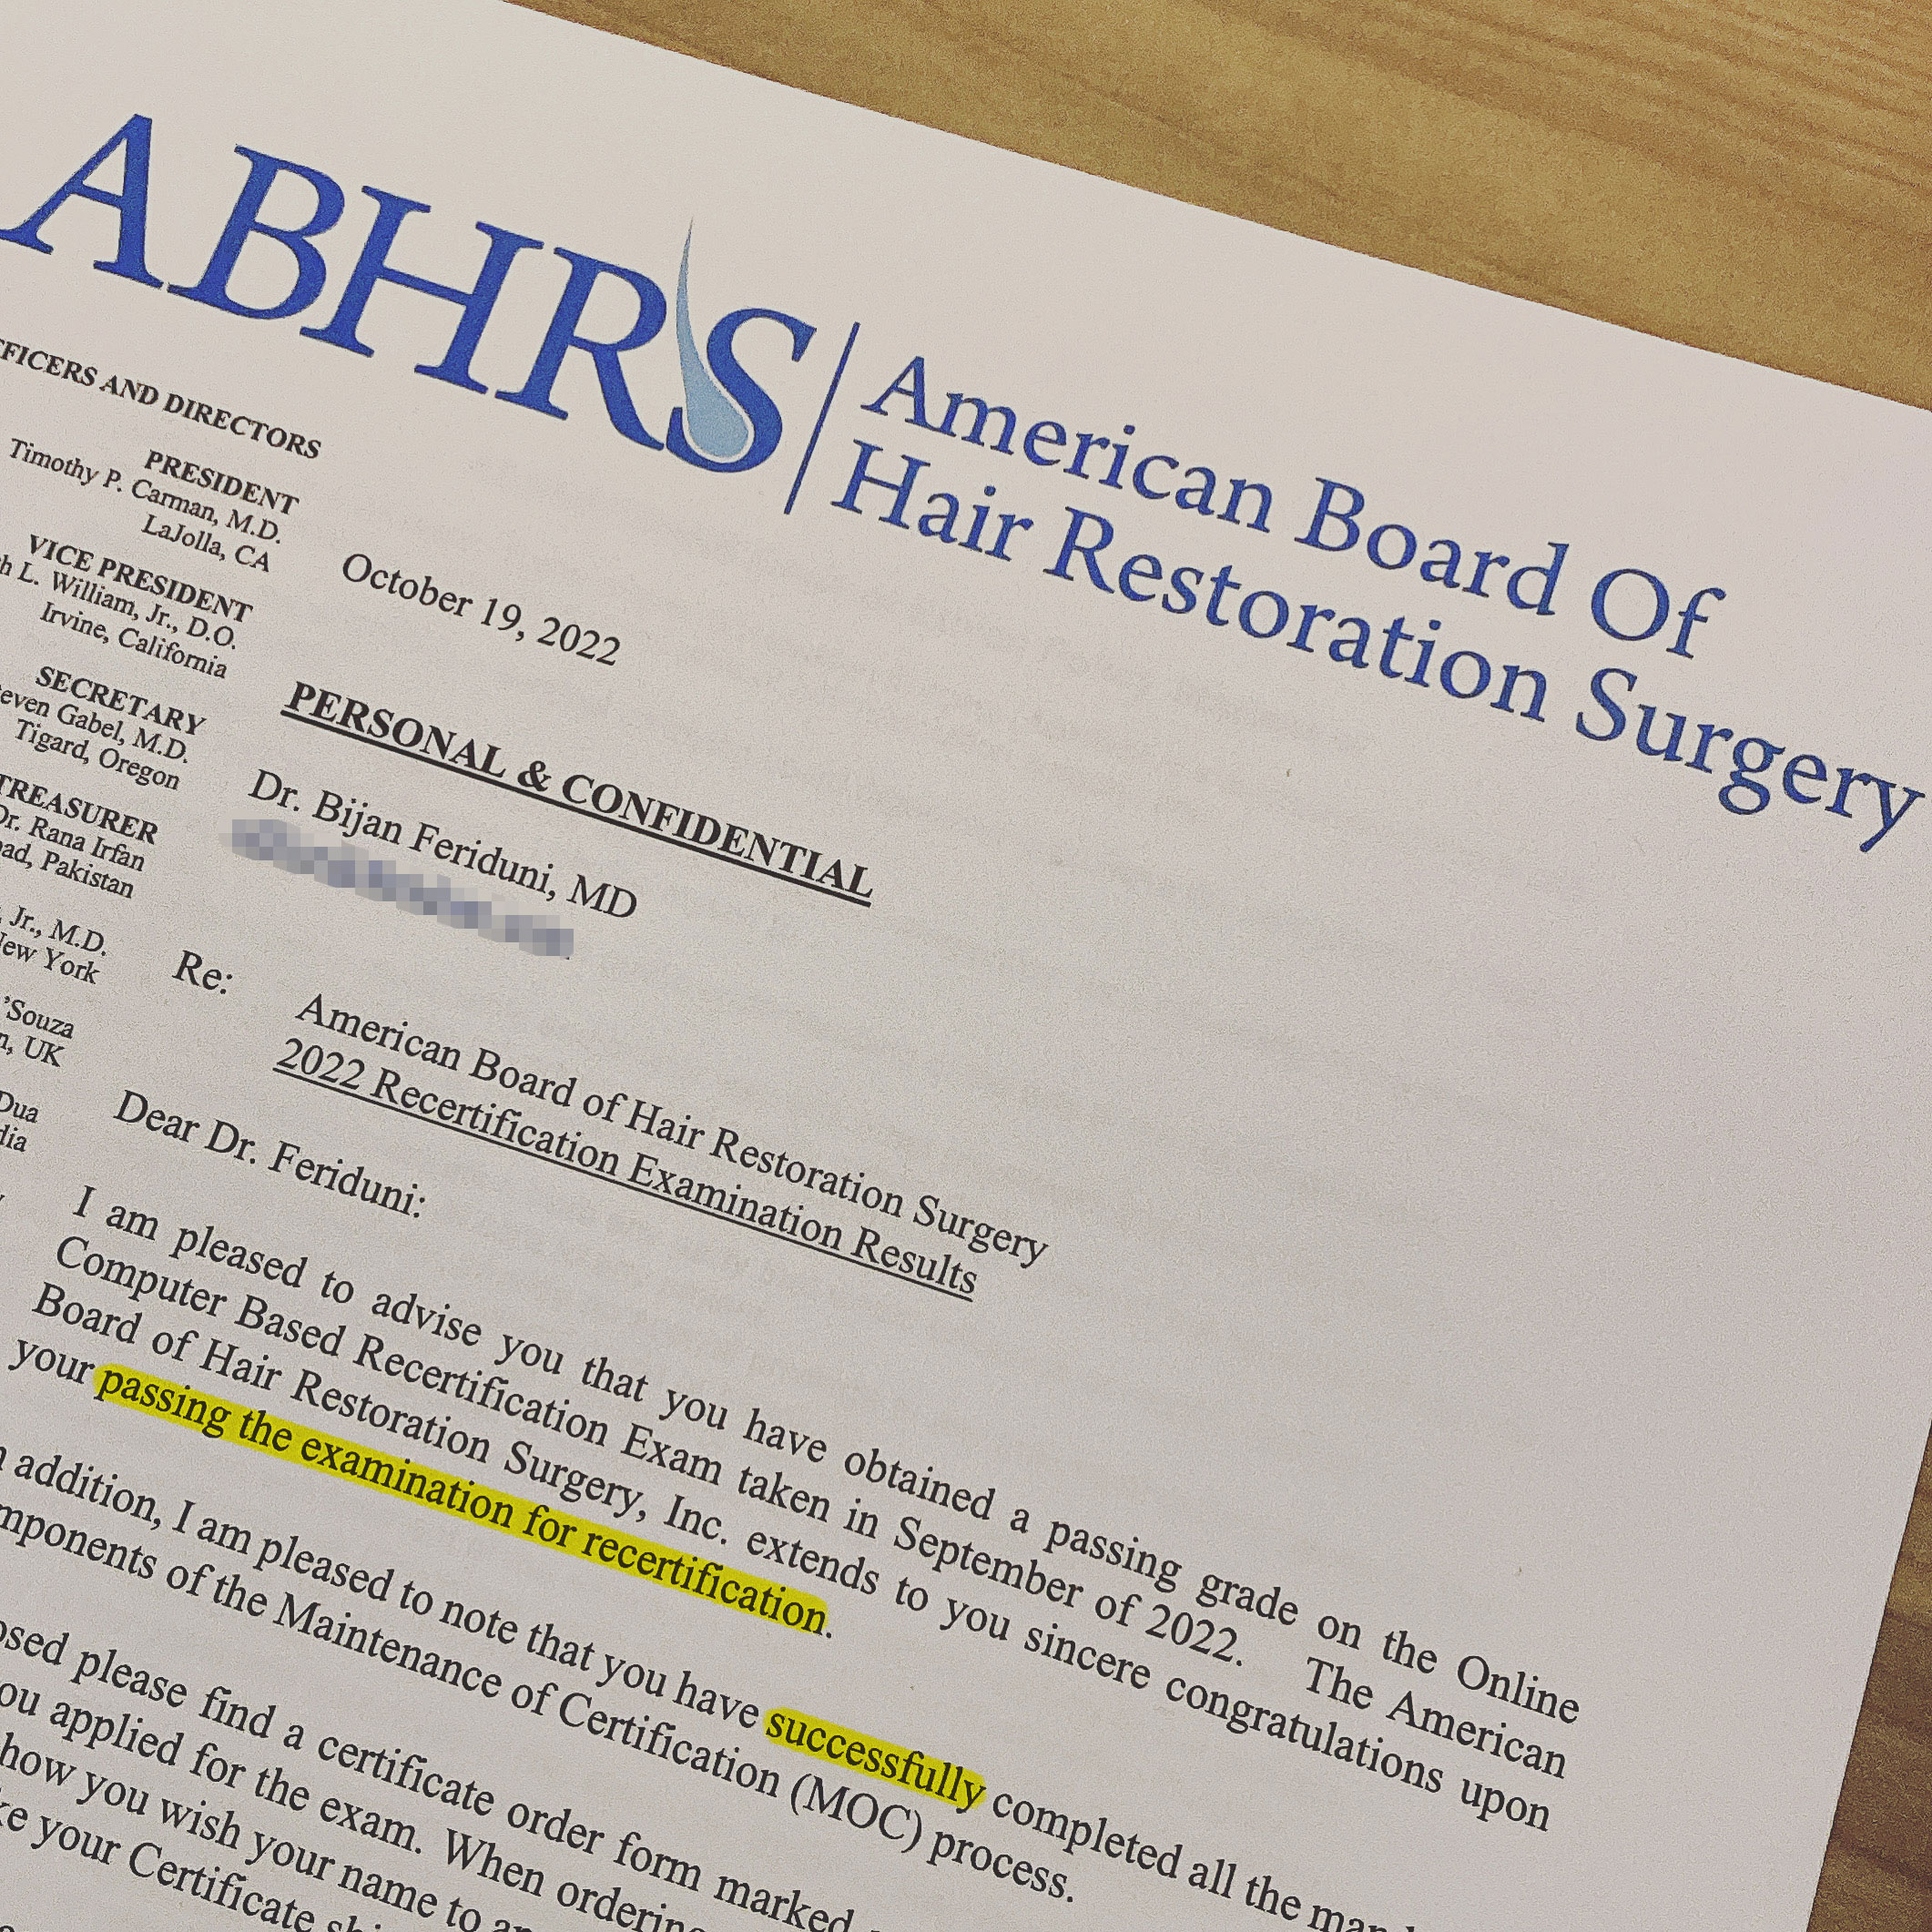 ABHRS News - Dr. Feriduni